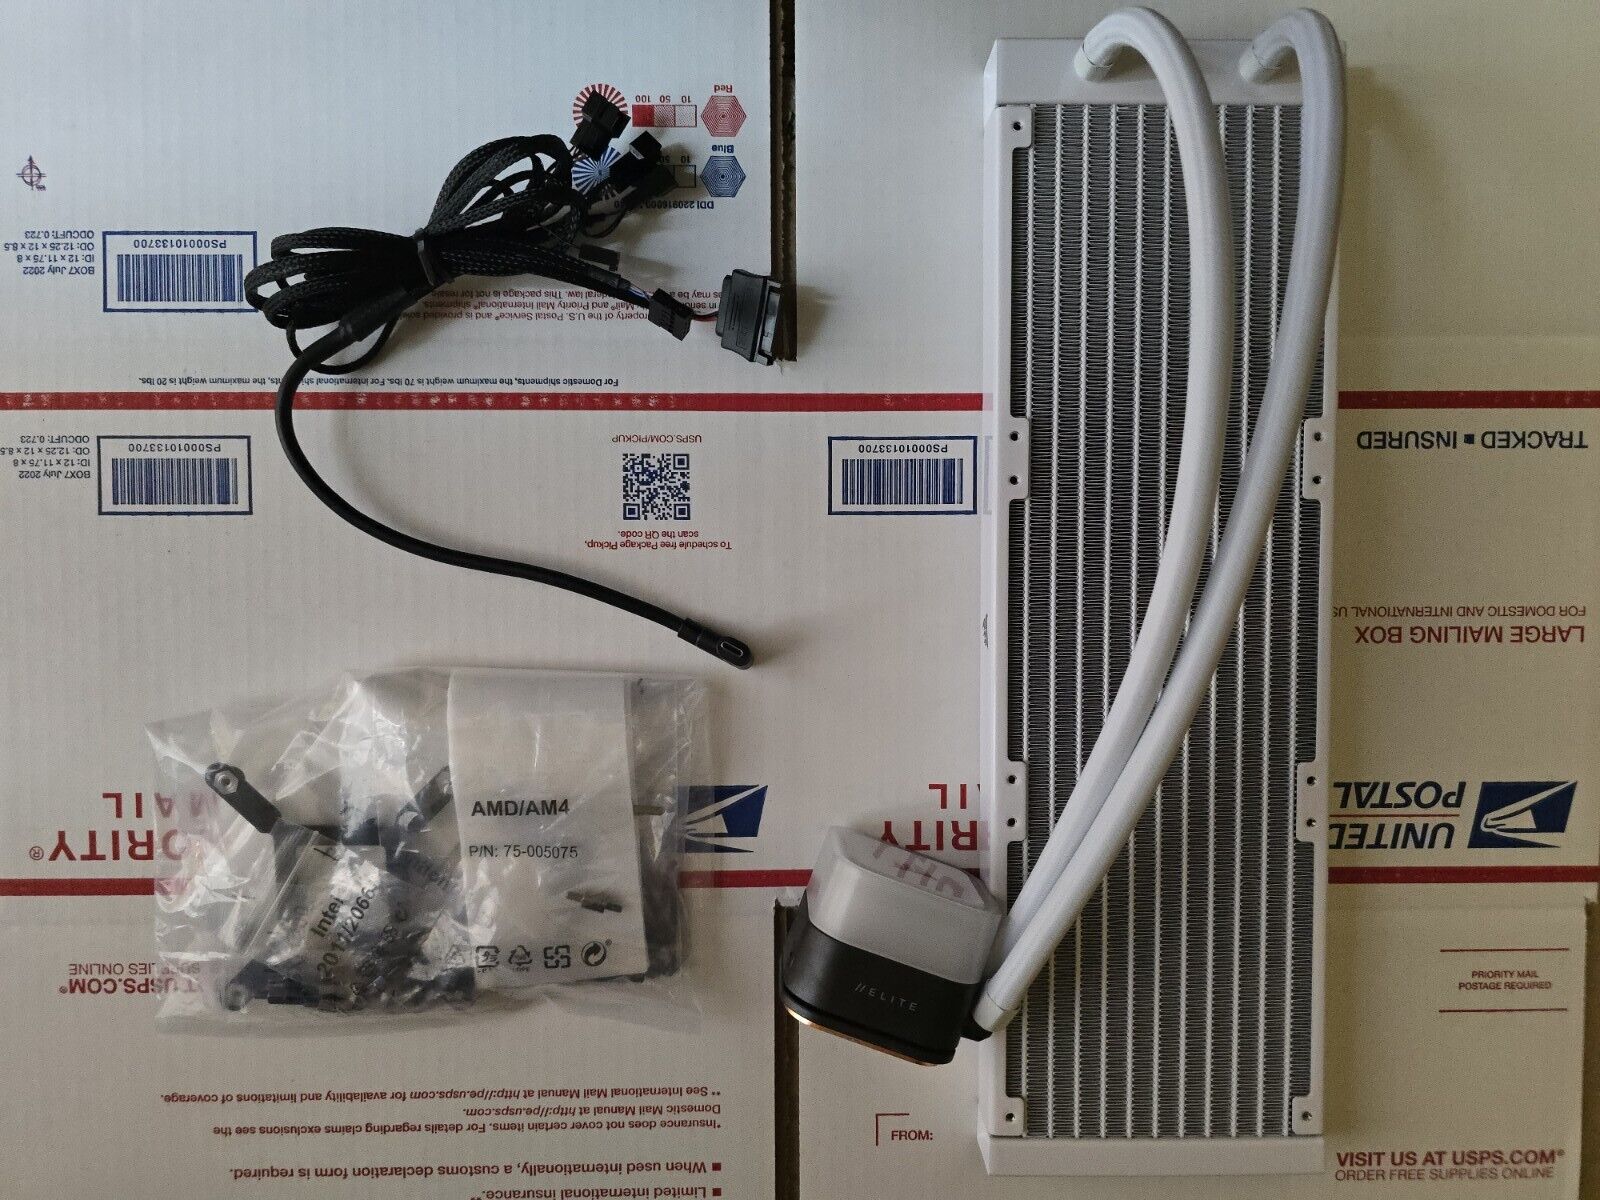 CORSAIR iCUE H150i RGB ELITE Liquid CPU Cooler Radiator - White - No Fans (Read)